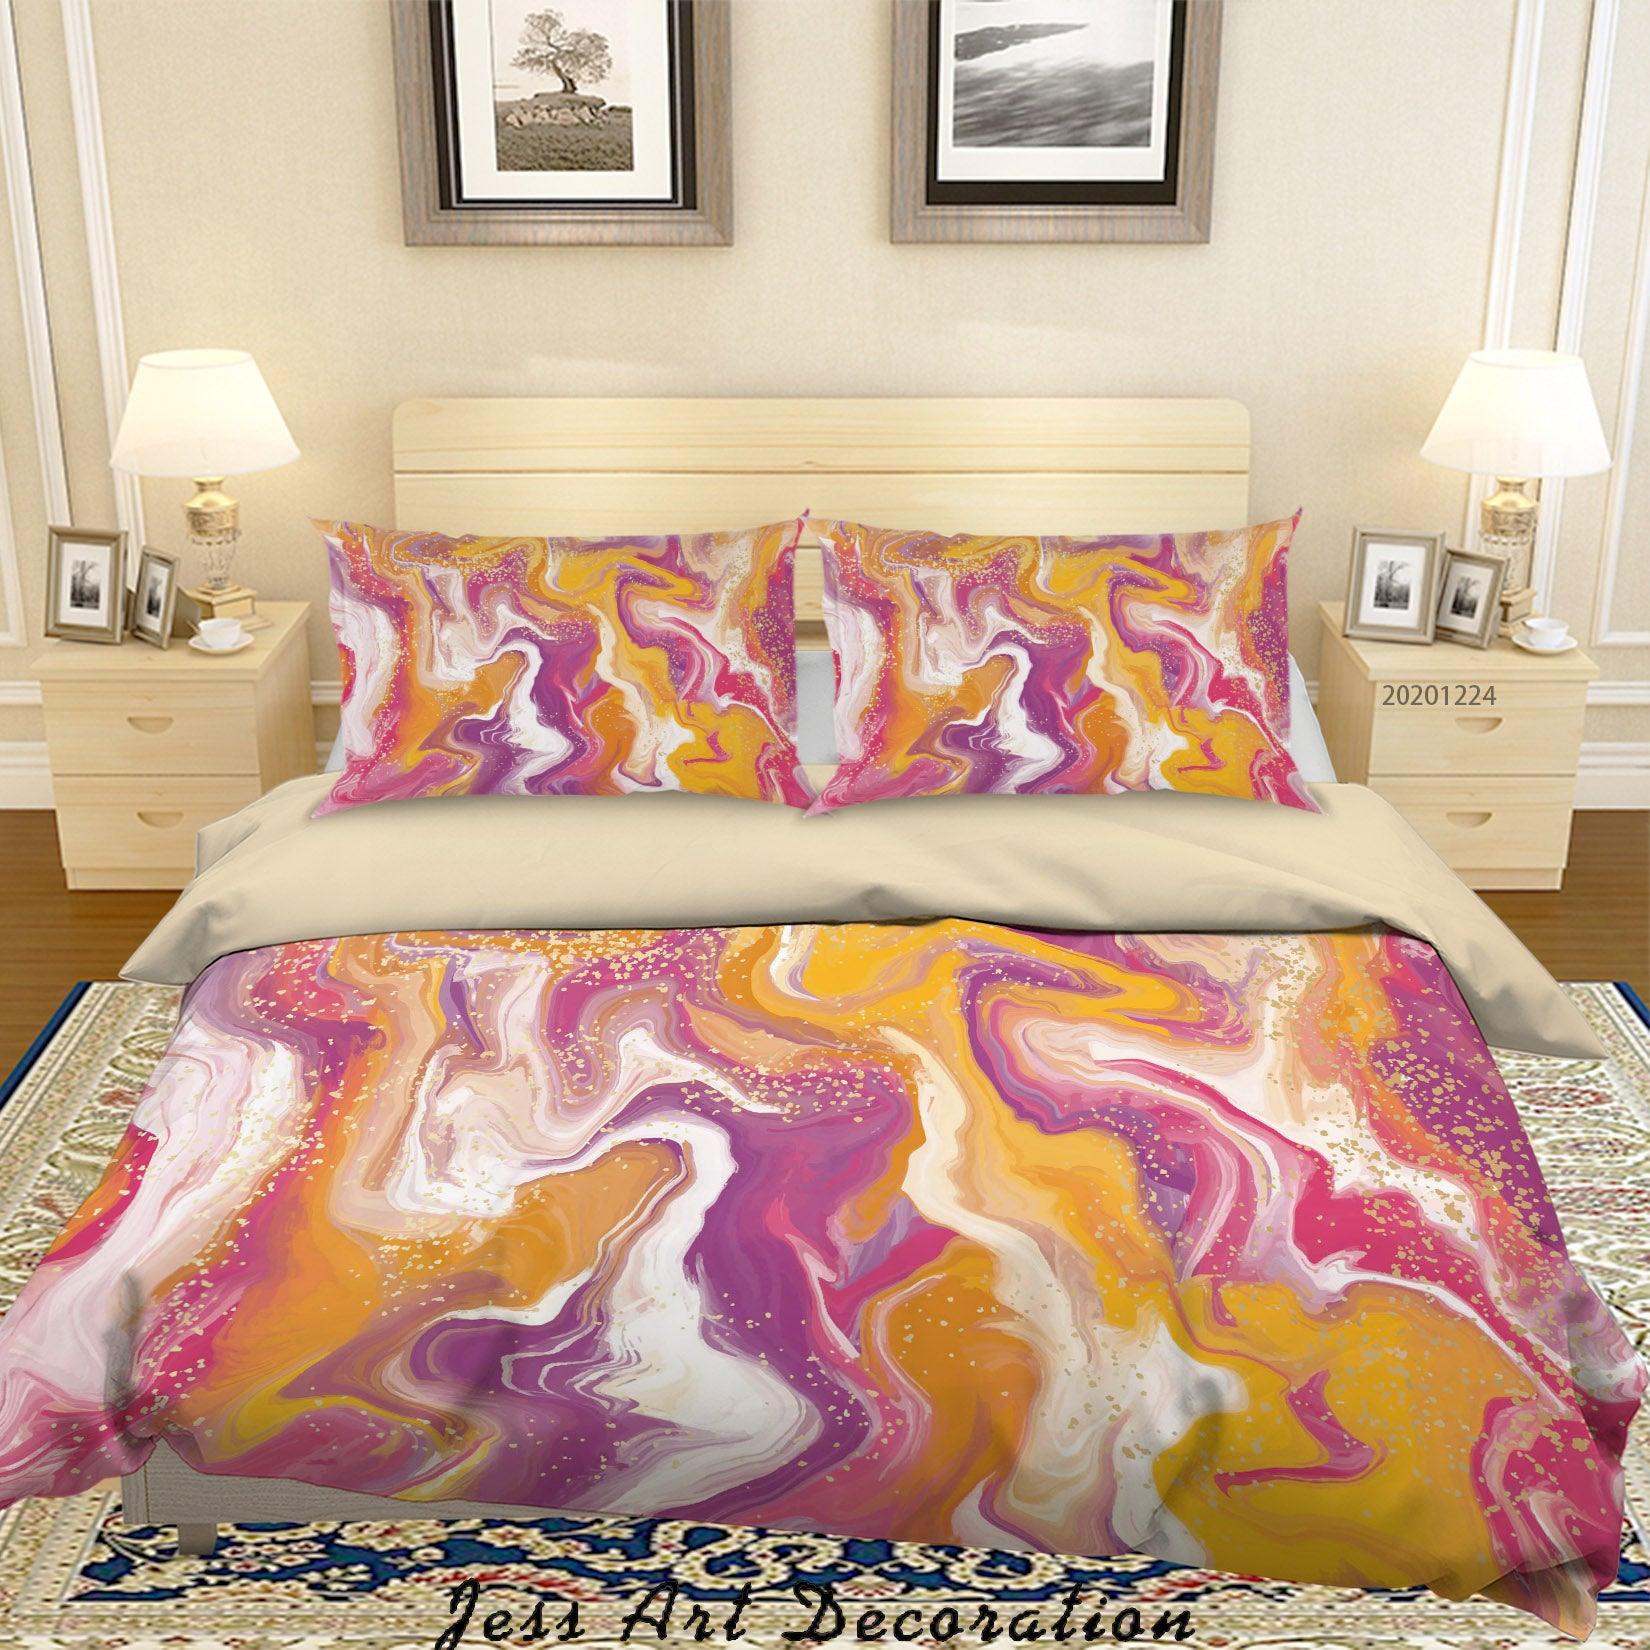 3D Watercolor Color Marble Quilt Cover Set Bedding Set Duvet Cover Pillowcases 68 LQH- Jess Art Decoration